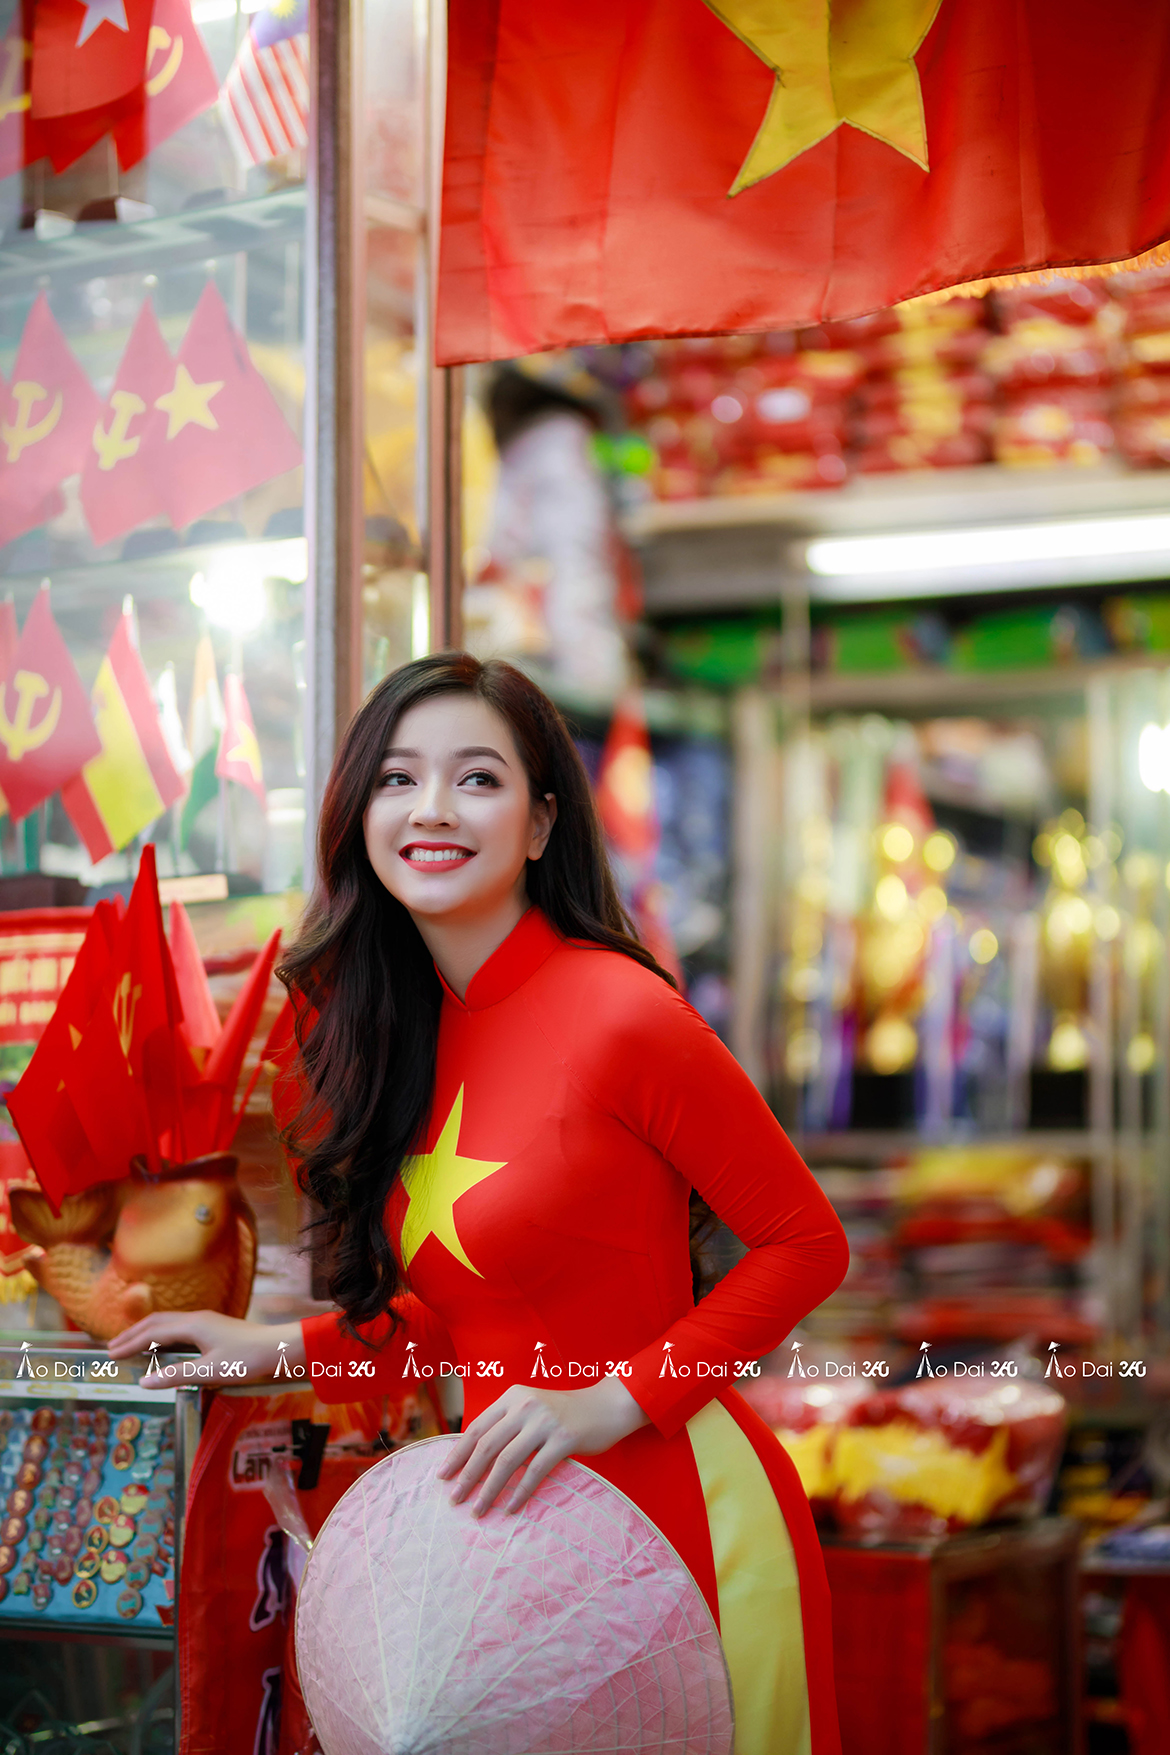 Áo dài cờ đỏ sao vàng là biểu tượng của văn hóa Việt Nam, đẹp và duyên dáng. Được tạo ra từ sự kết hợp giữa áo dài và cờ đỏ sao vàng, chúng thể hiện sự kiêu hãnh và tình yêu nước của người Việt. Hãy xem hình ảnh để hiểu thêm về giá trị của áo dài cờ đỏ sao vàng!